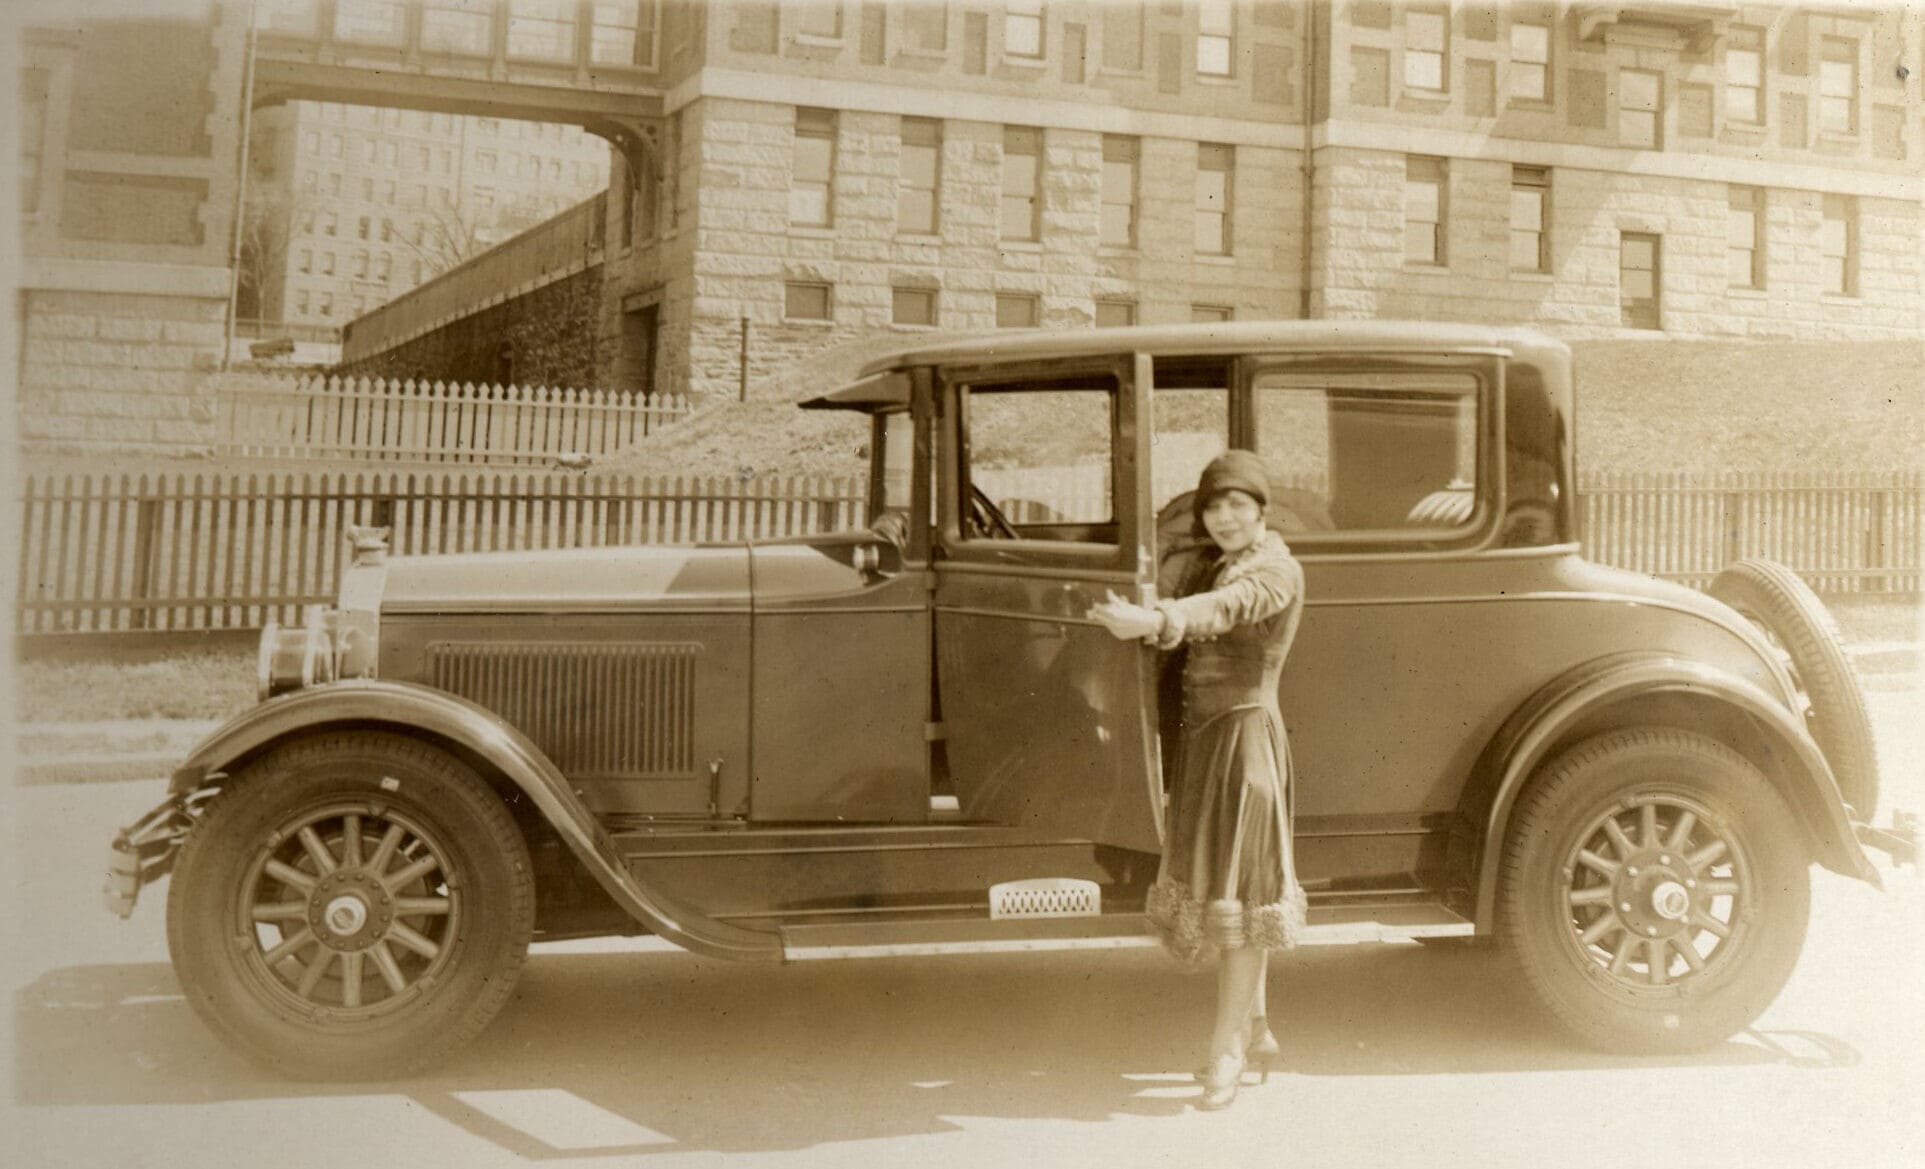 פולי אדלר ומוכנית הקופה שרכשה, יולי 1927 (צילום: Polly Adler Collection courtesy of Eleanor Vera)